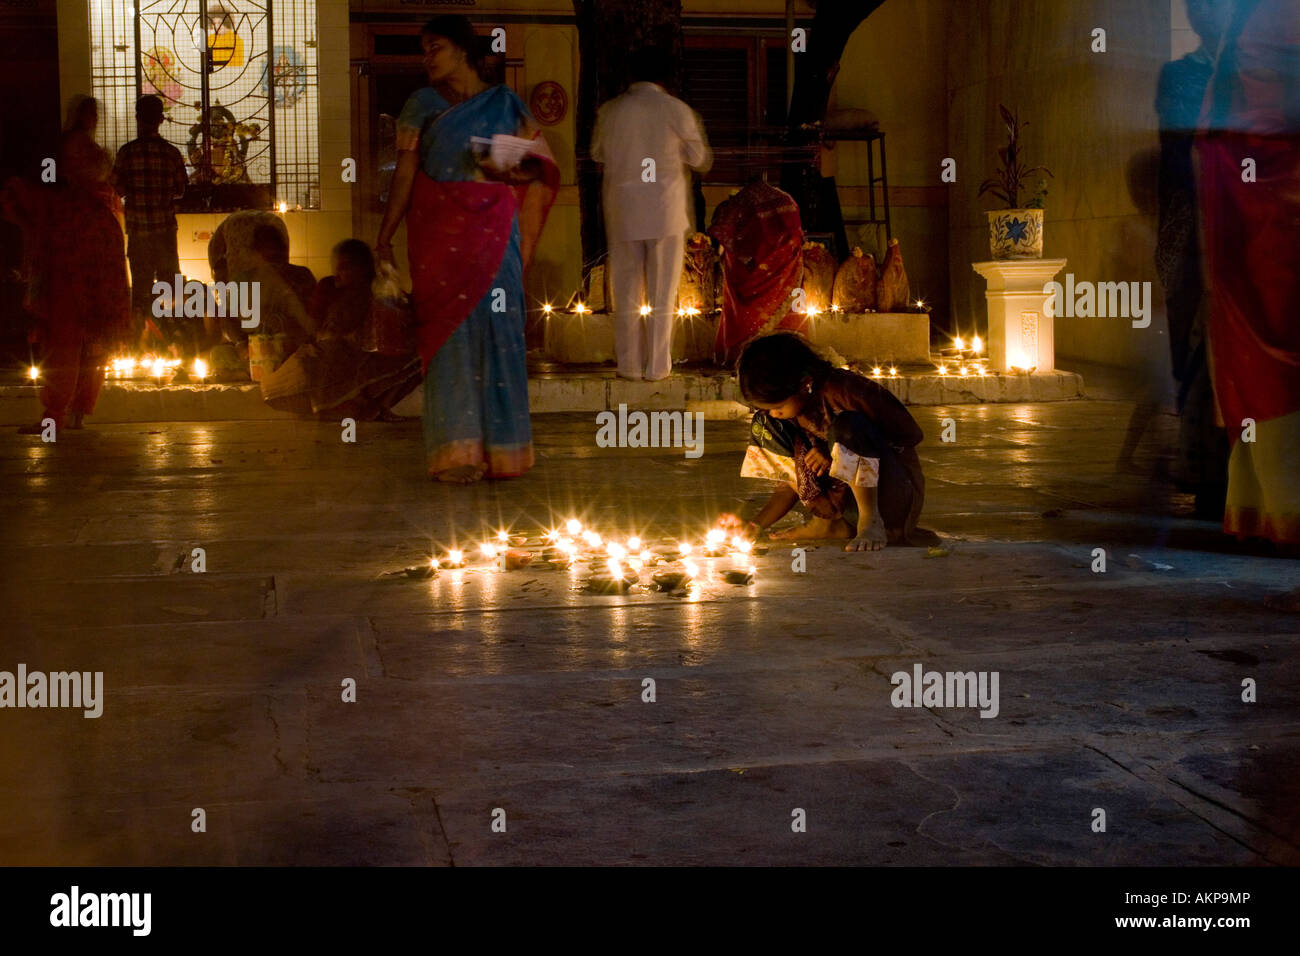 Indian girl dans un temple hindou à un Diwali festival à Puttaparthi, Andhra Pradesh, Inde.fête hindoue des lumières. Prises avec une longue exposition Banque D'Images